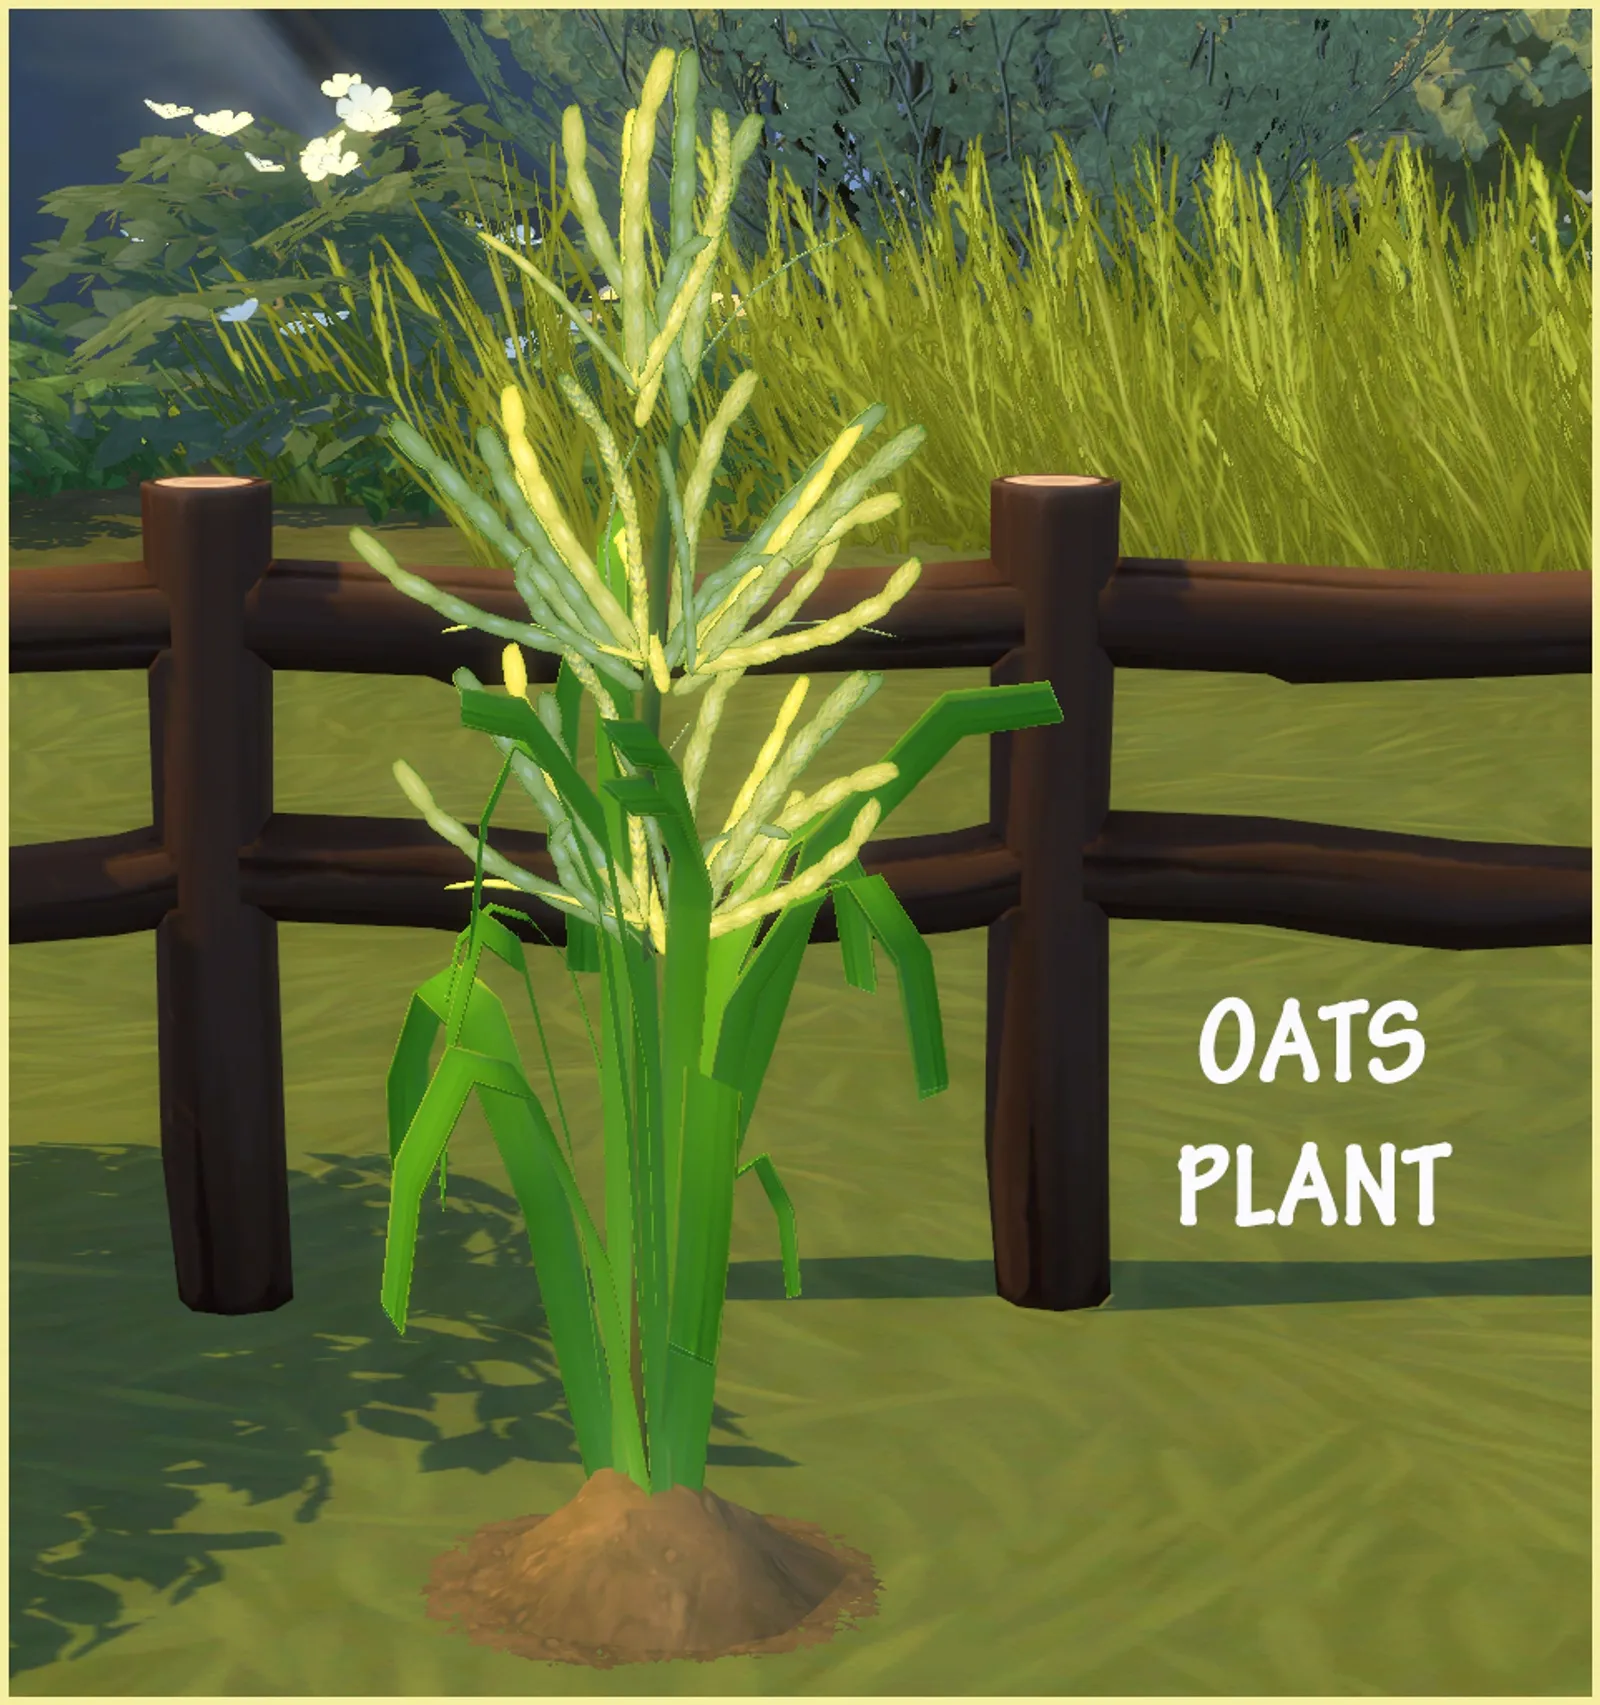 OATS PLANT